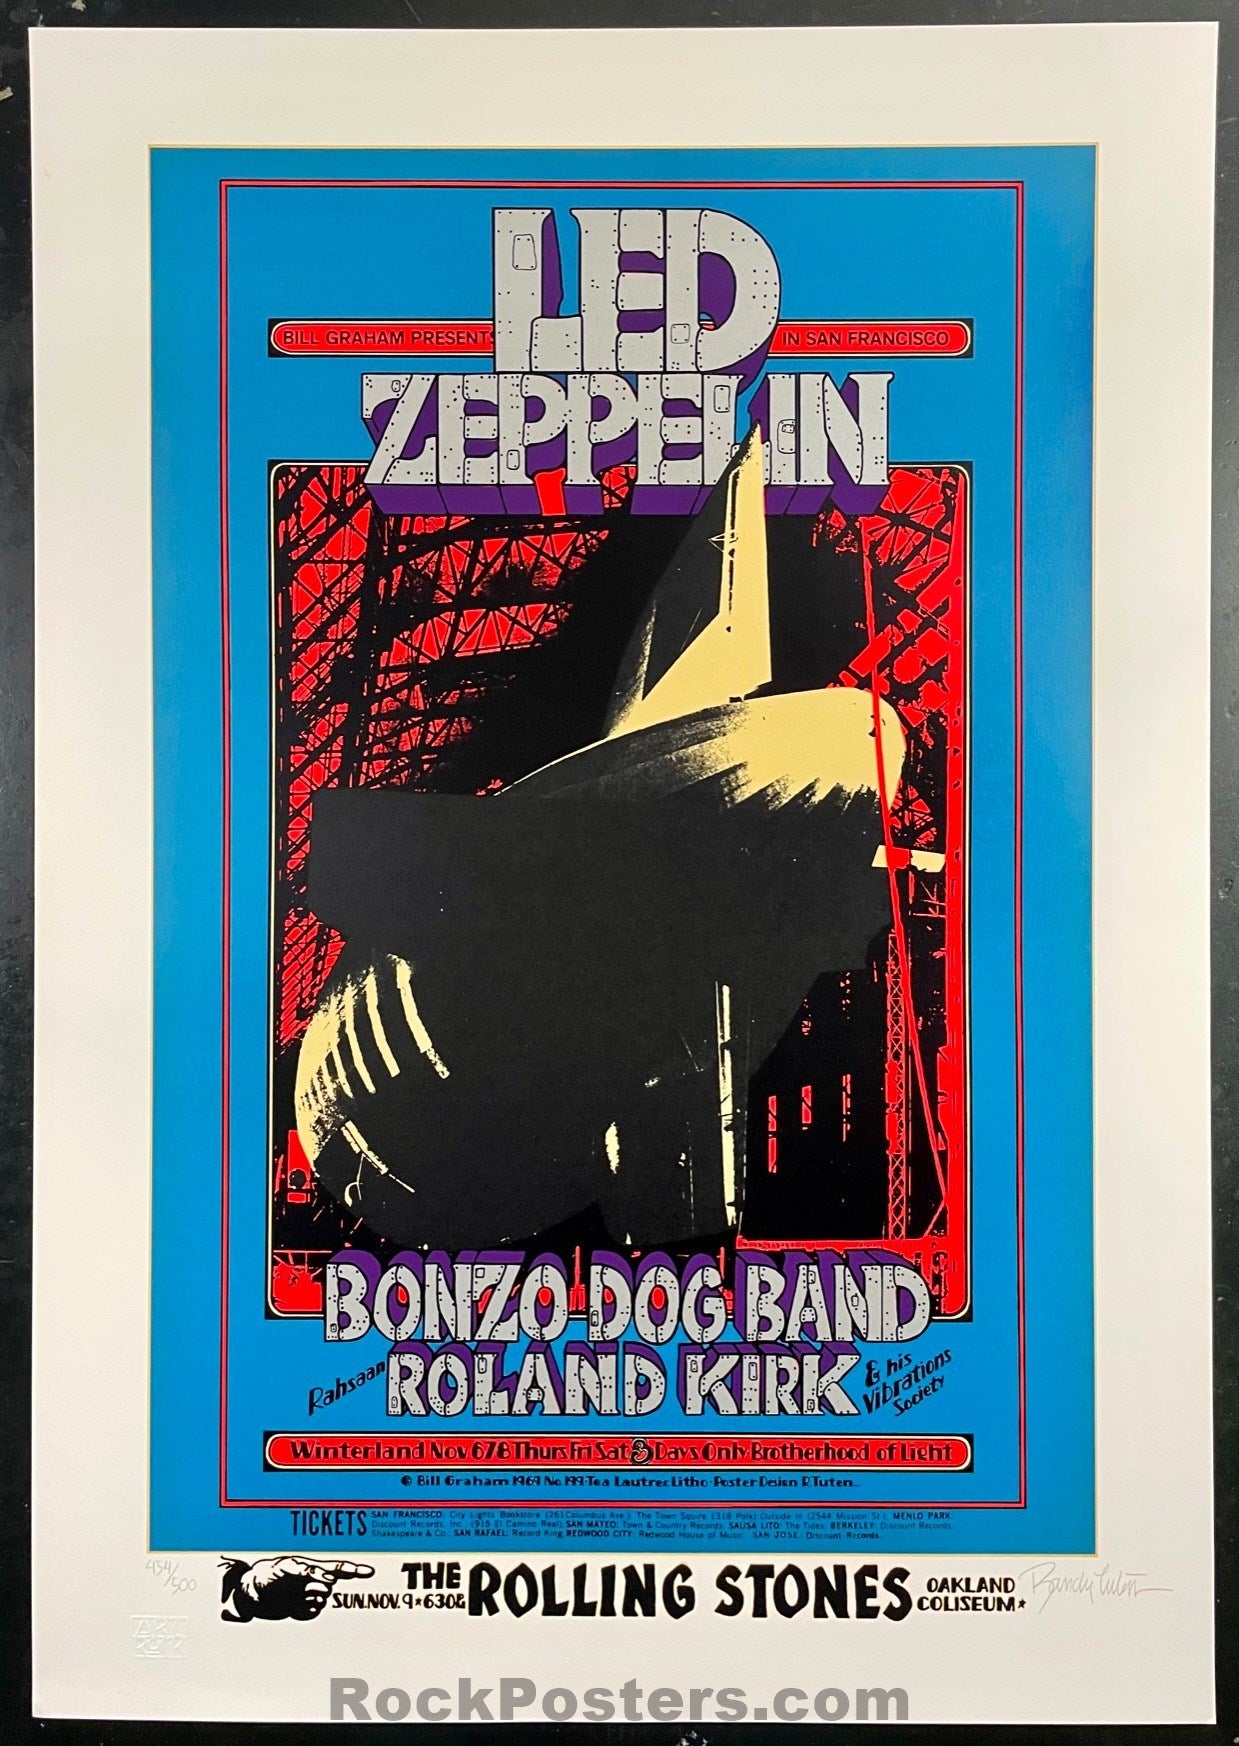 AUCTION - BG-199 - Led Zeppelin - Randy Tuten Signed - Serigraph Poster - Winterland - Near Mint